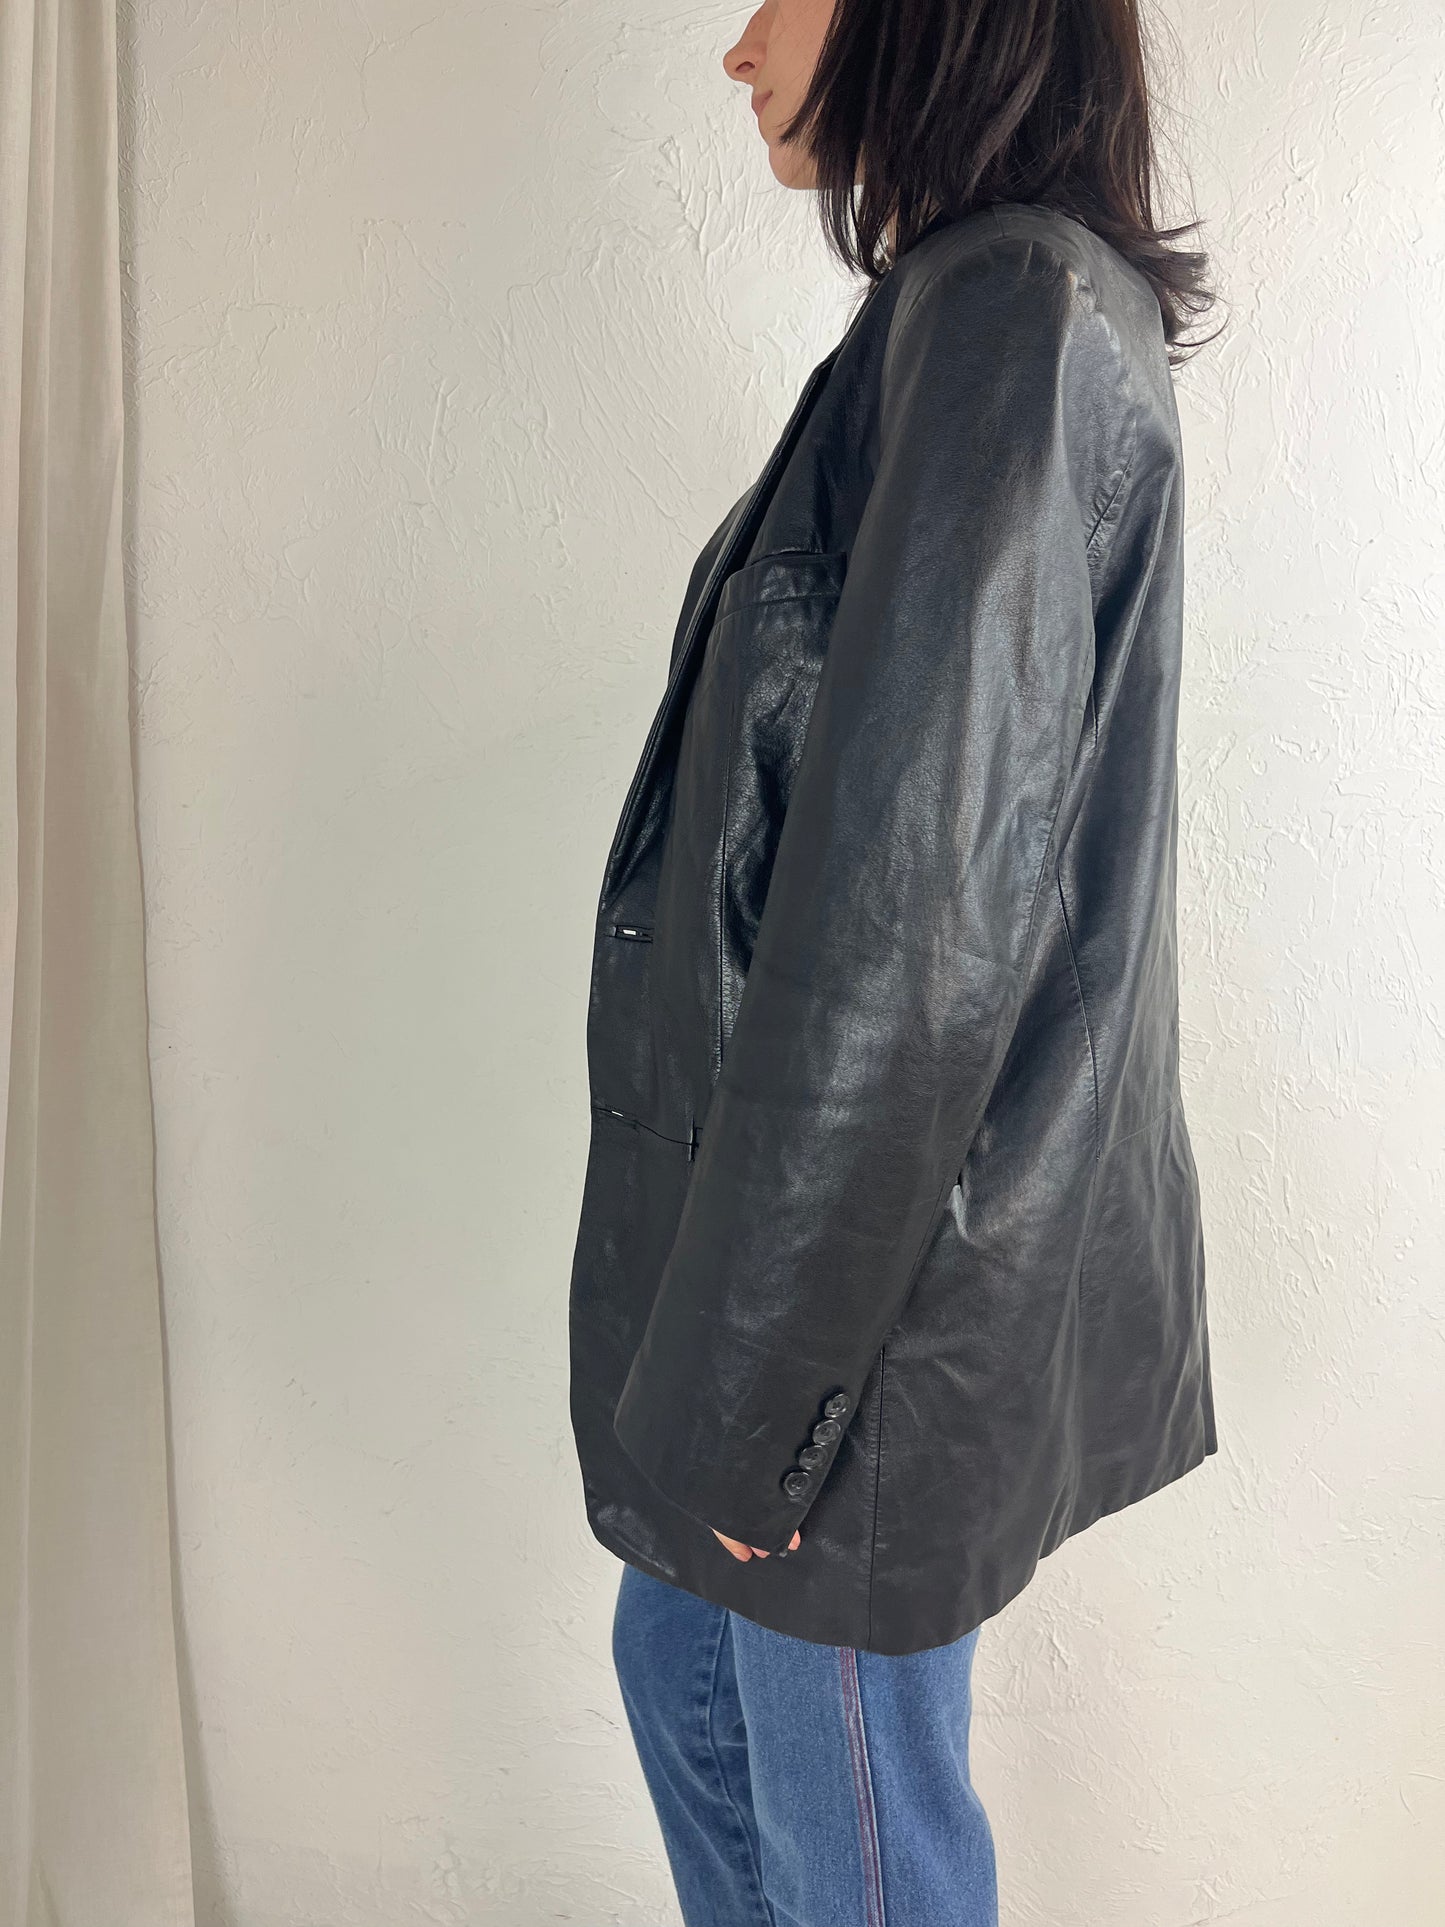 Y2K 'Danier' Oversized Leather Blazer Jacket / Small